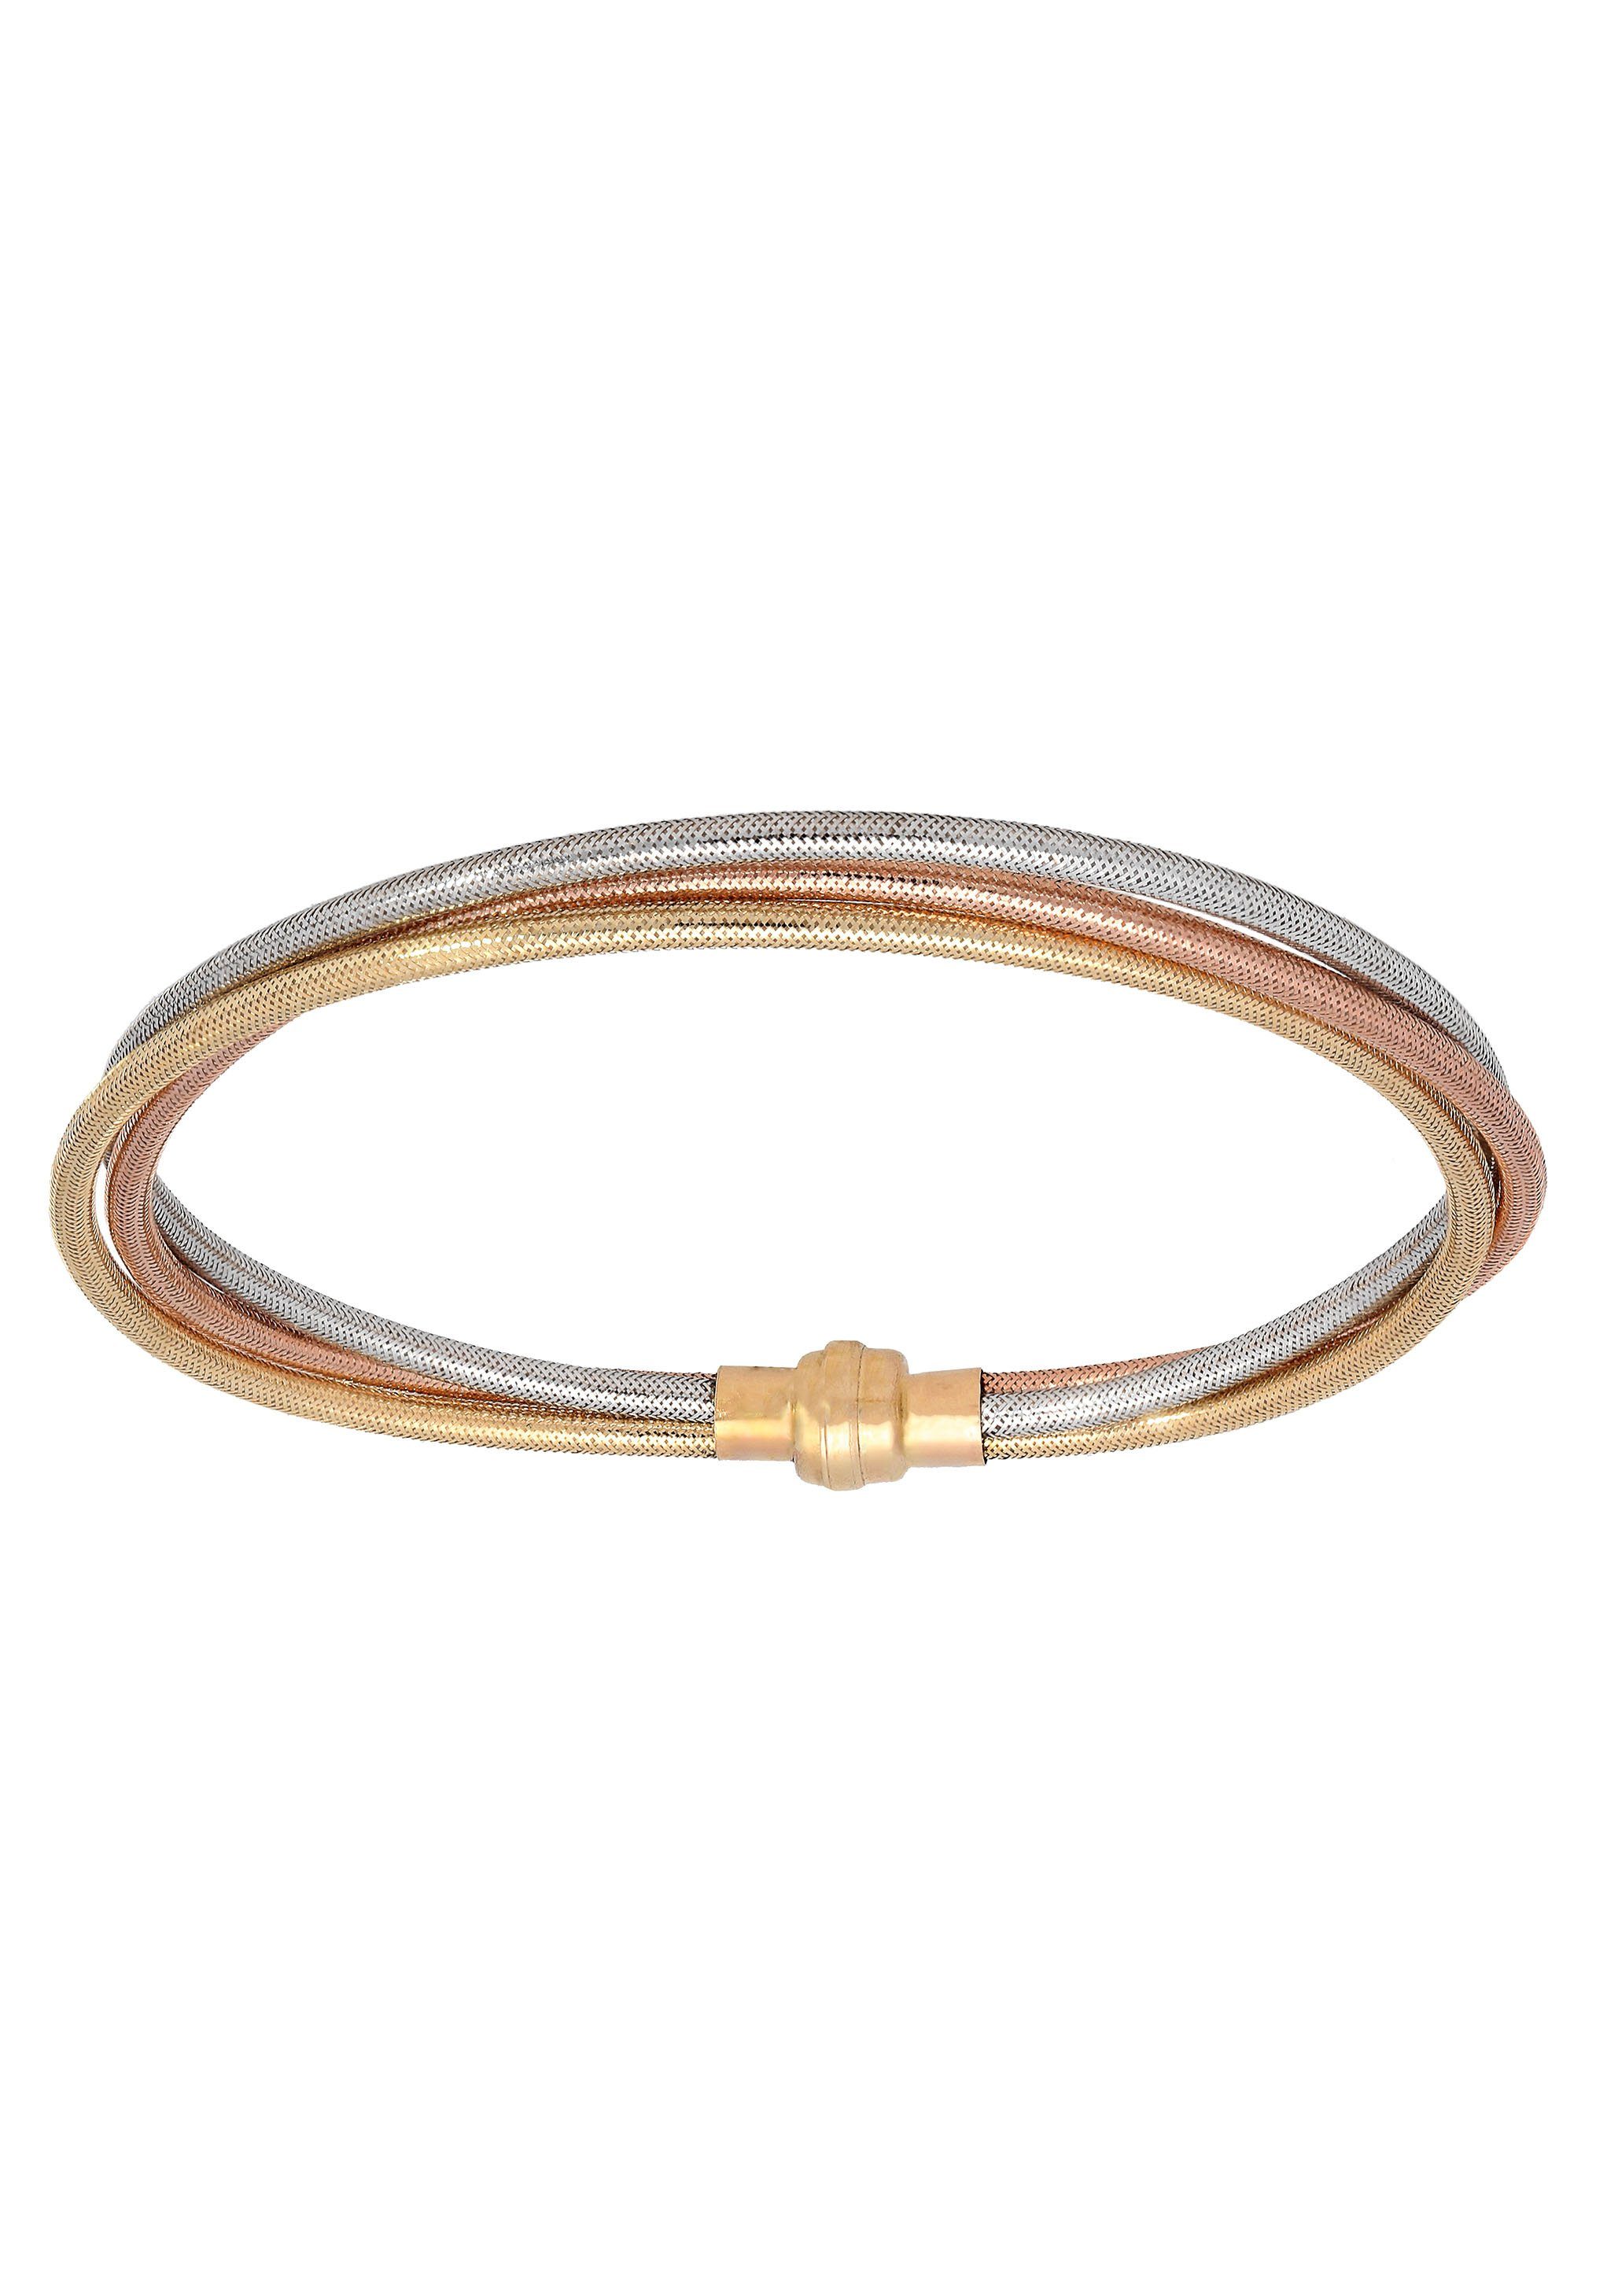 Firetti Armband Schmuck Geschenk Gold 375 Armschmuck Armkette Goldarmband